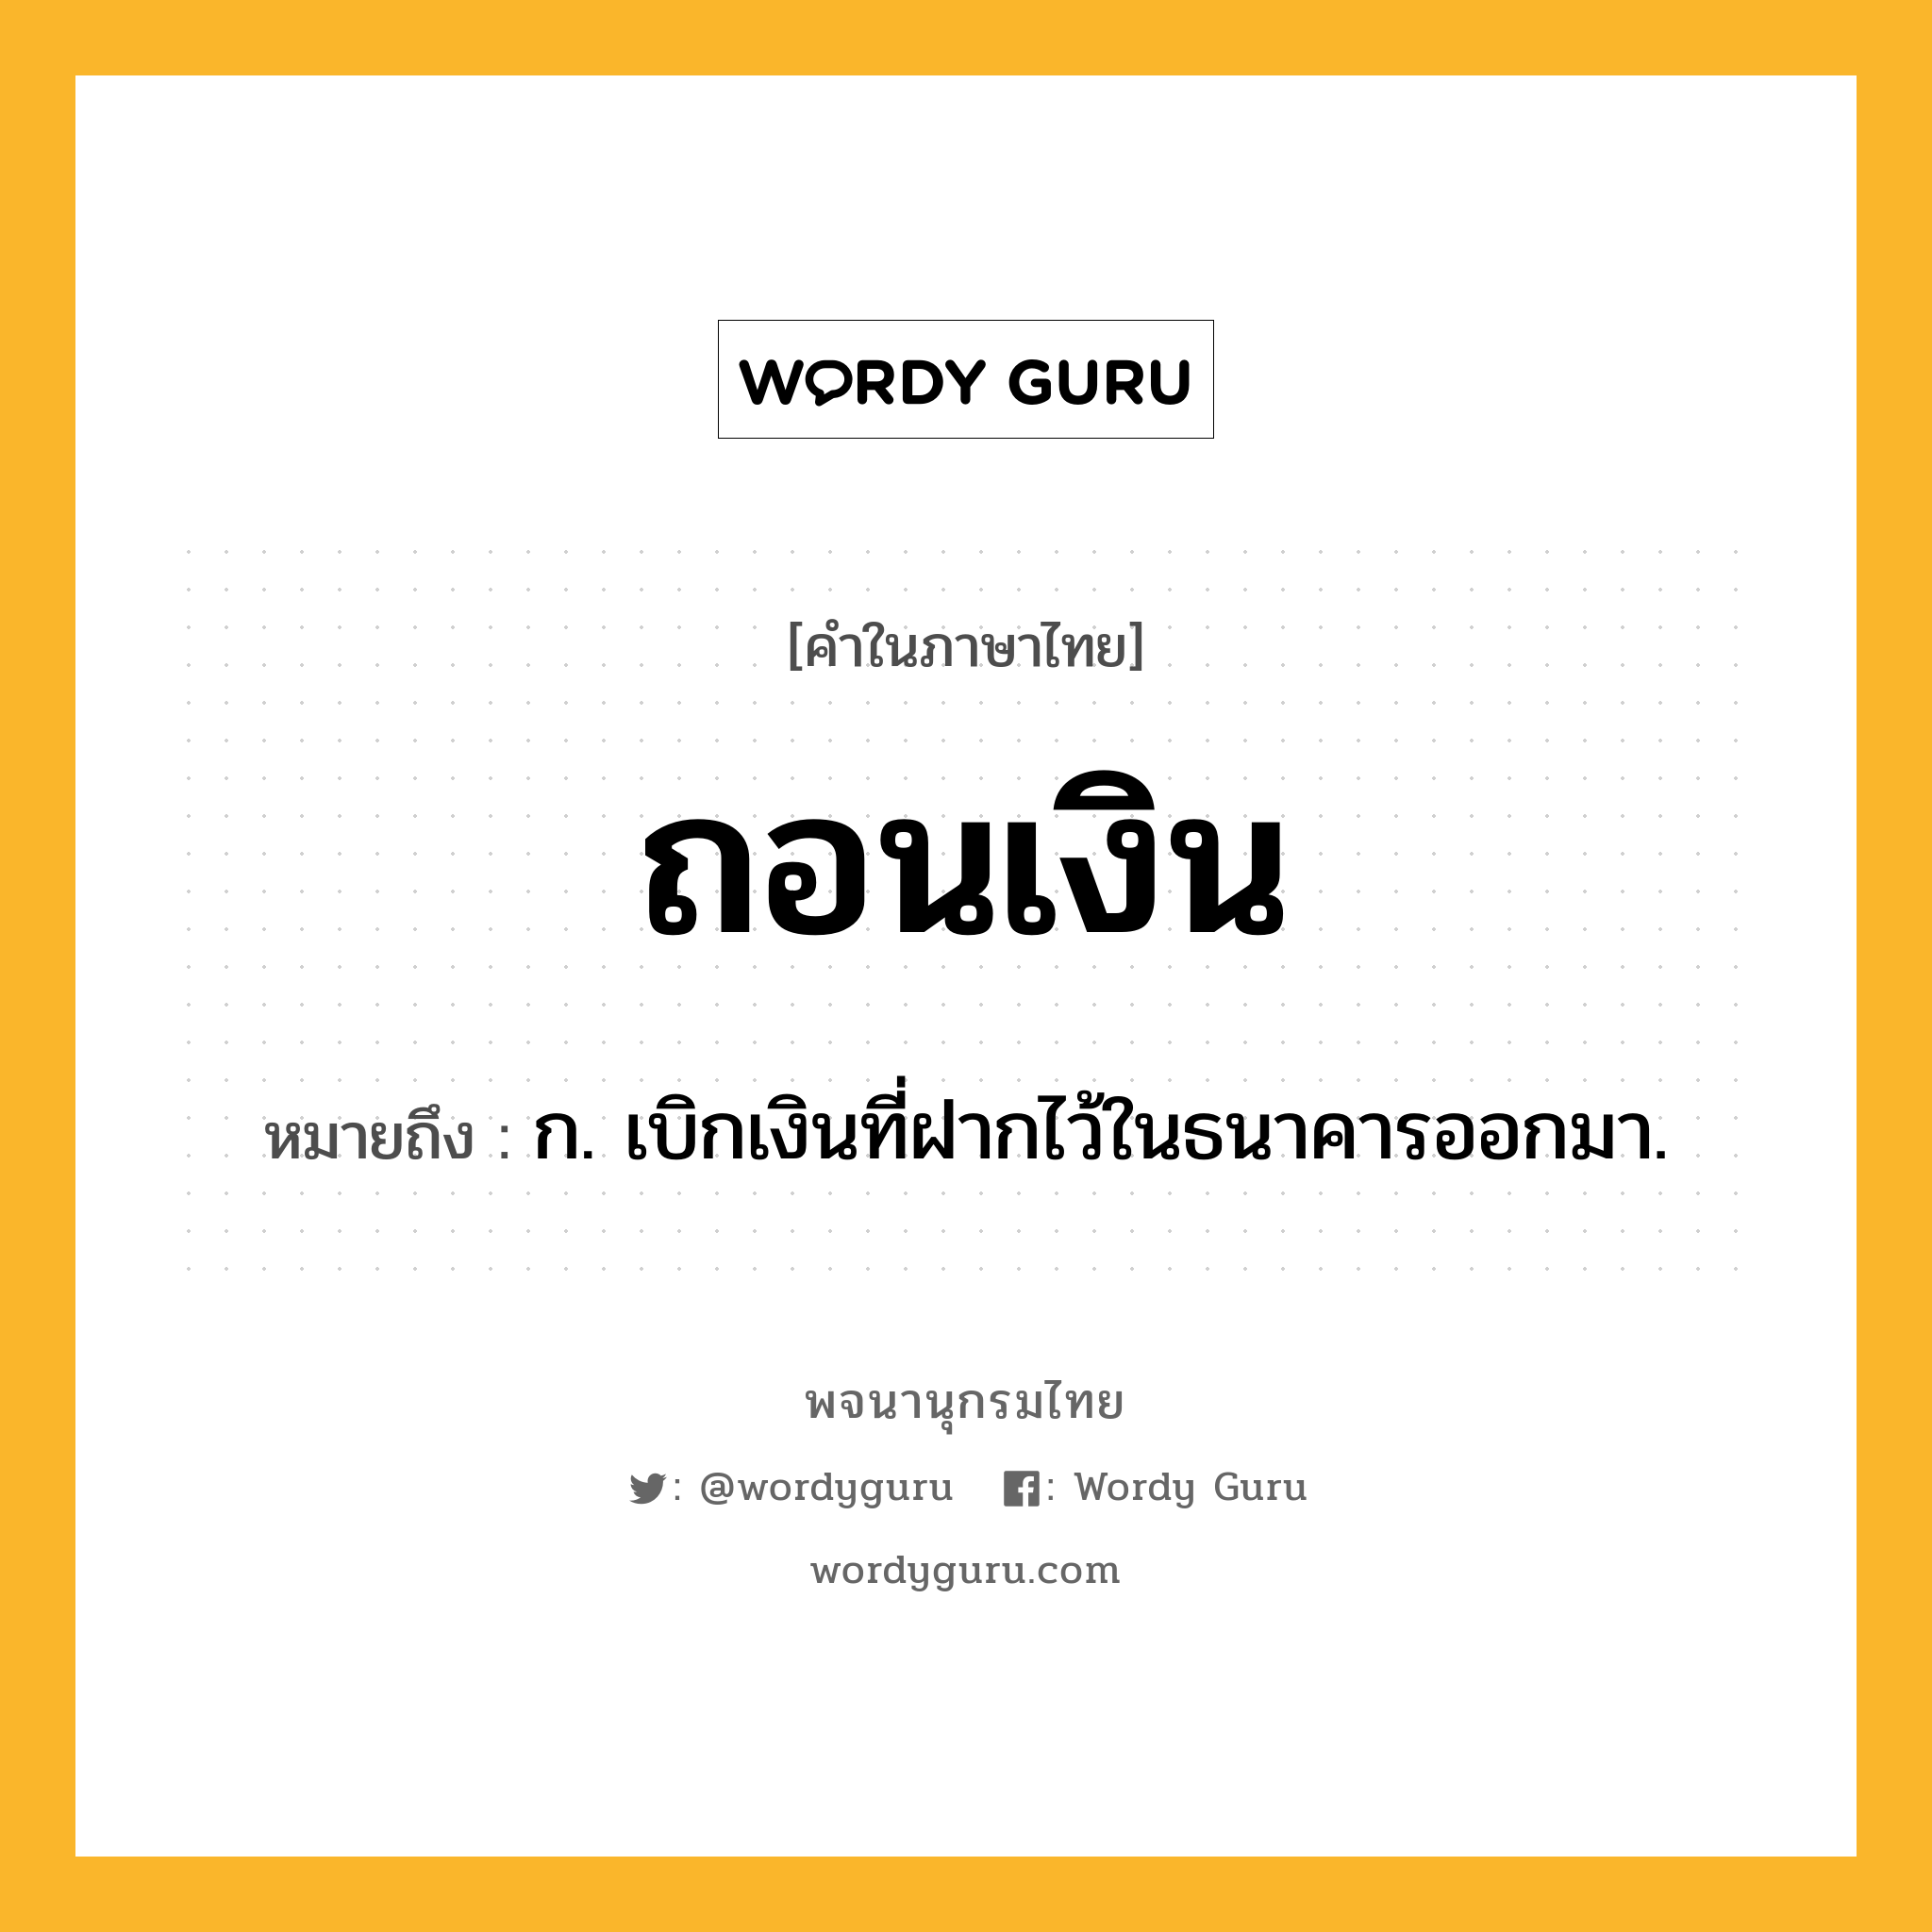 ถอนเงิน หมายถึงอะไร?, คำในภาษาไทย ถอนเงิน หมายถึง ก. เบิกเงินที่ฝากไว้ในธนาคารออกมา.